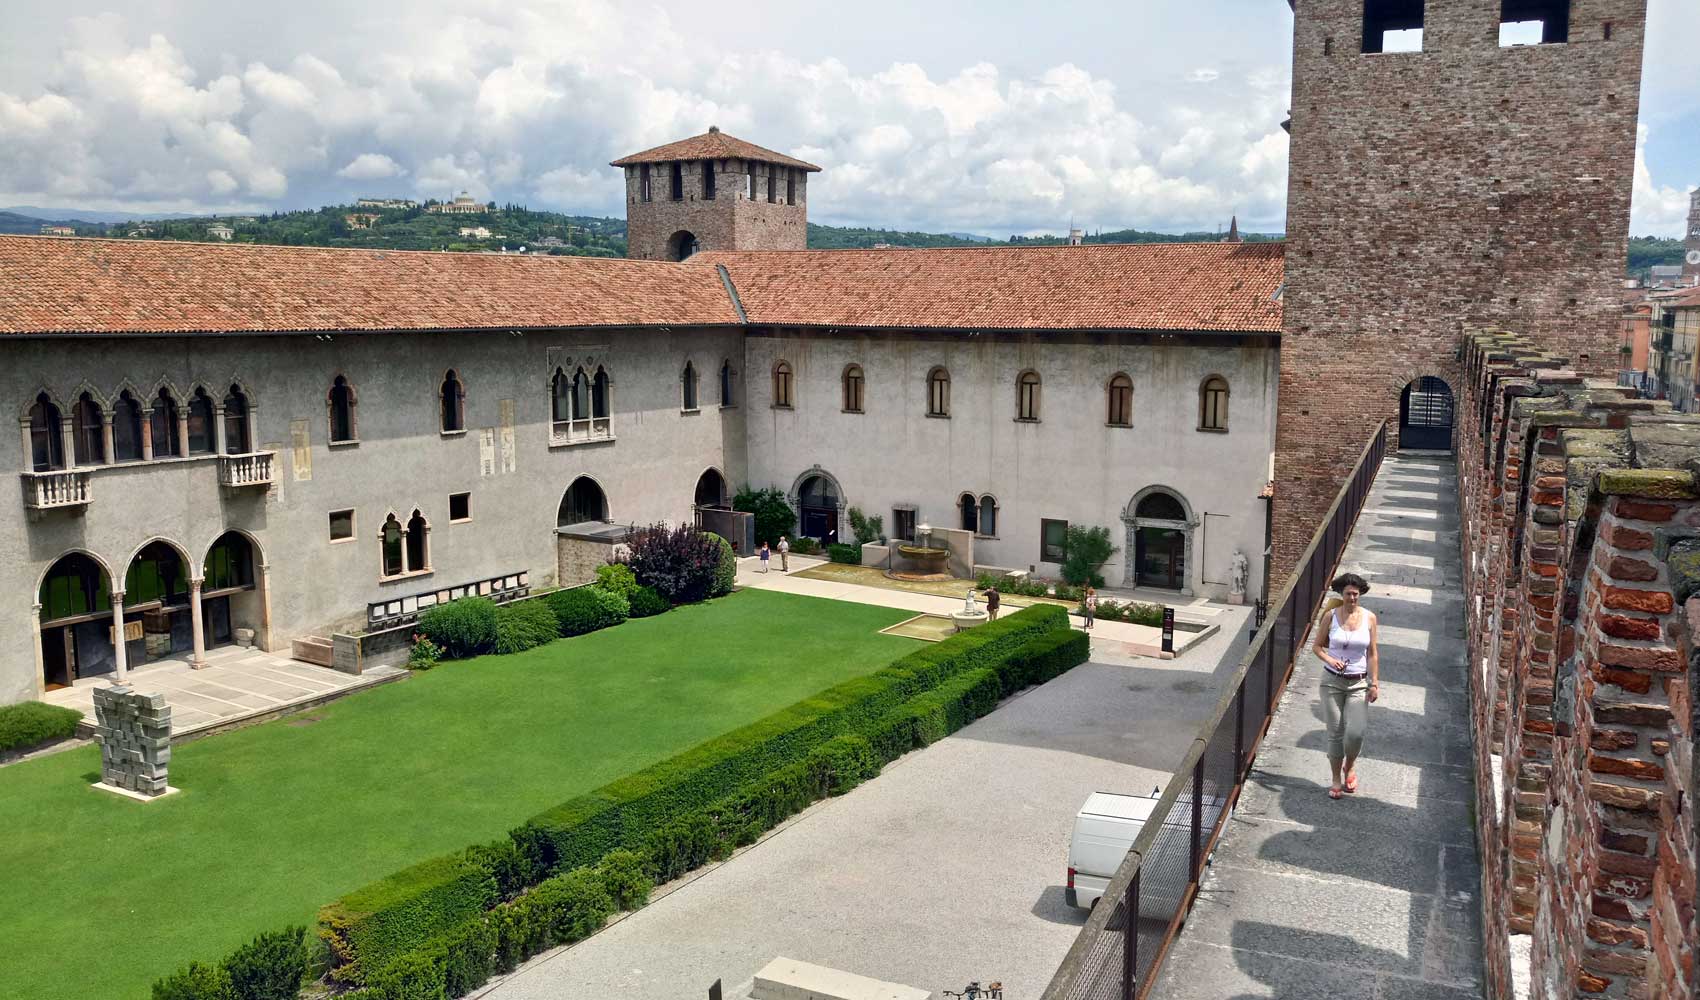 Der Innenbereich der Stadtfestung Castelvecchio von Verona.